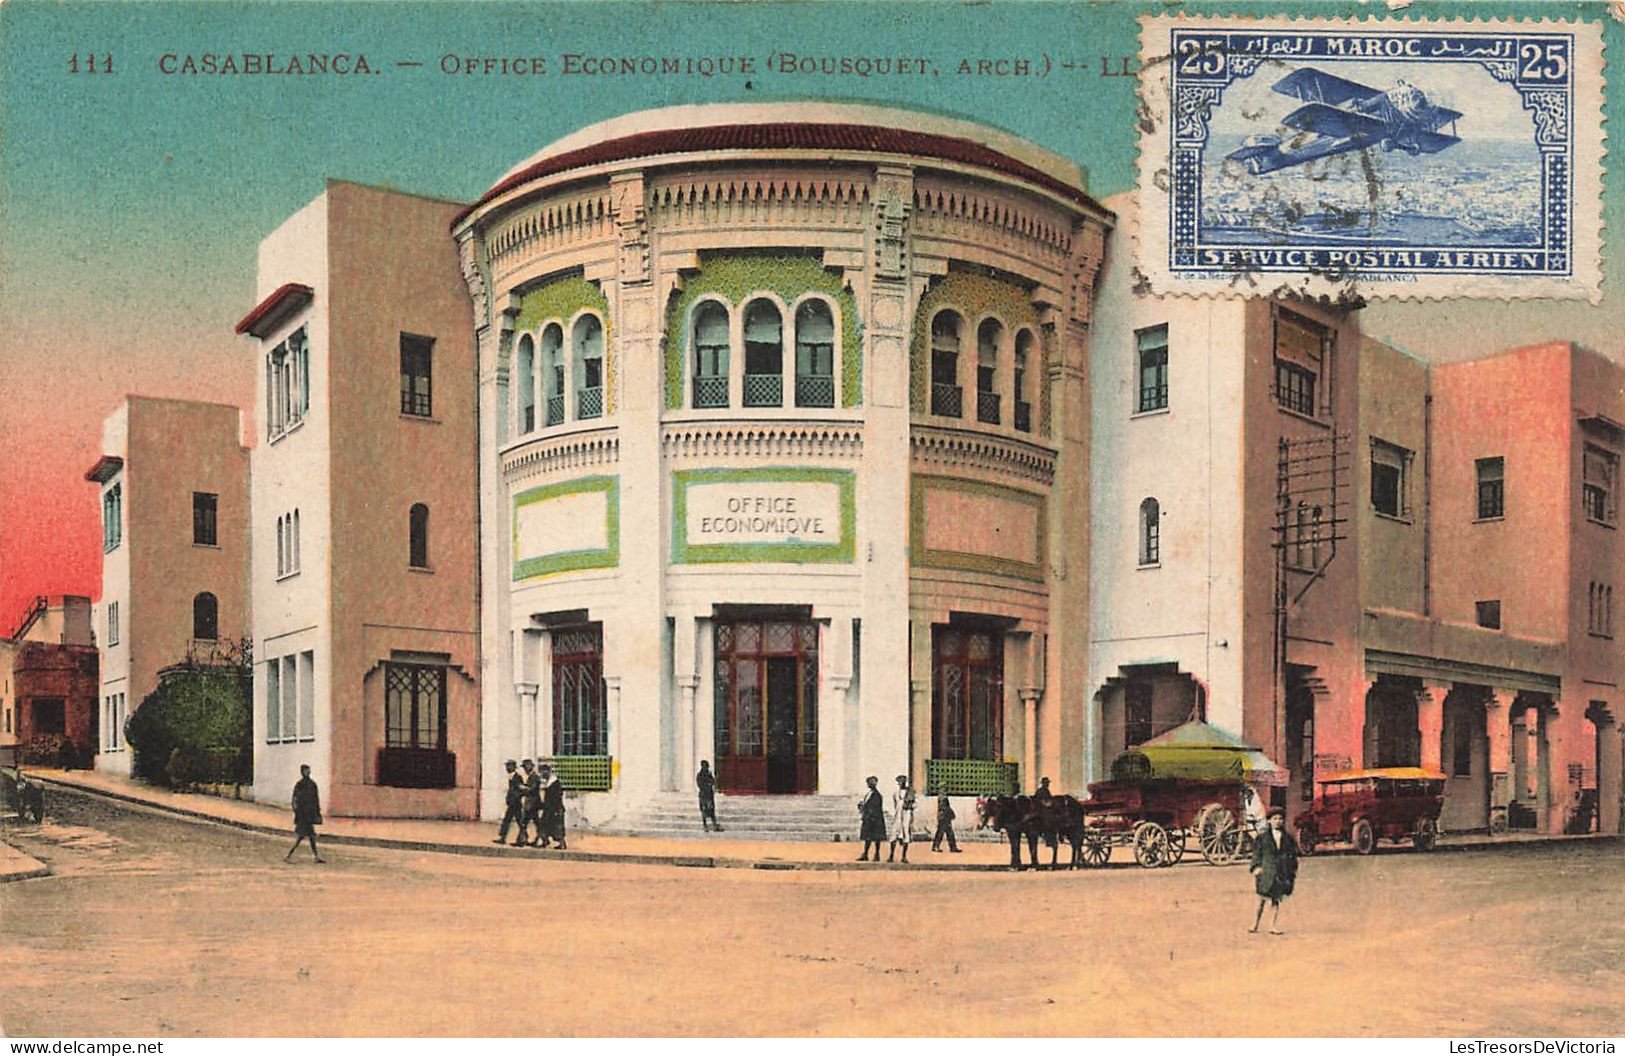 MAROC - Casablanca - Office économique (Bousquet Arch) - Colorisé - LL. - Carte Postale Ancienne - Casablanca